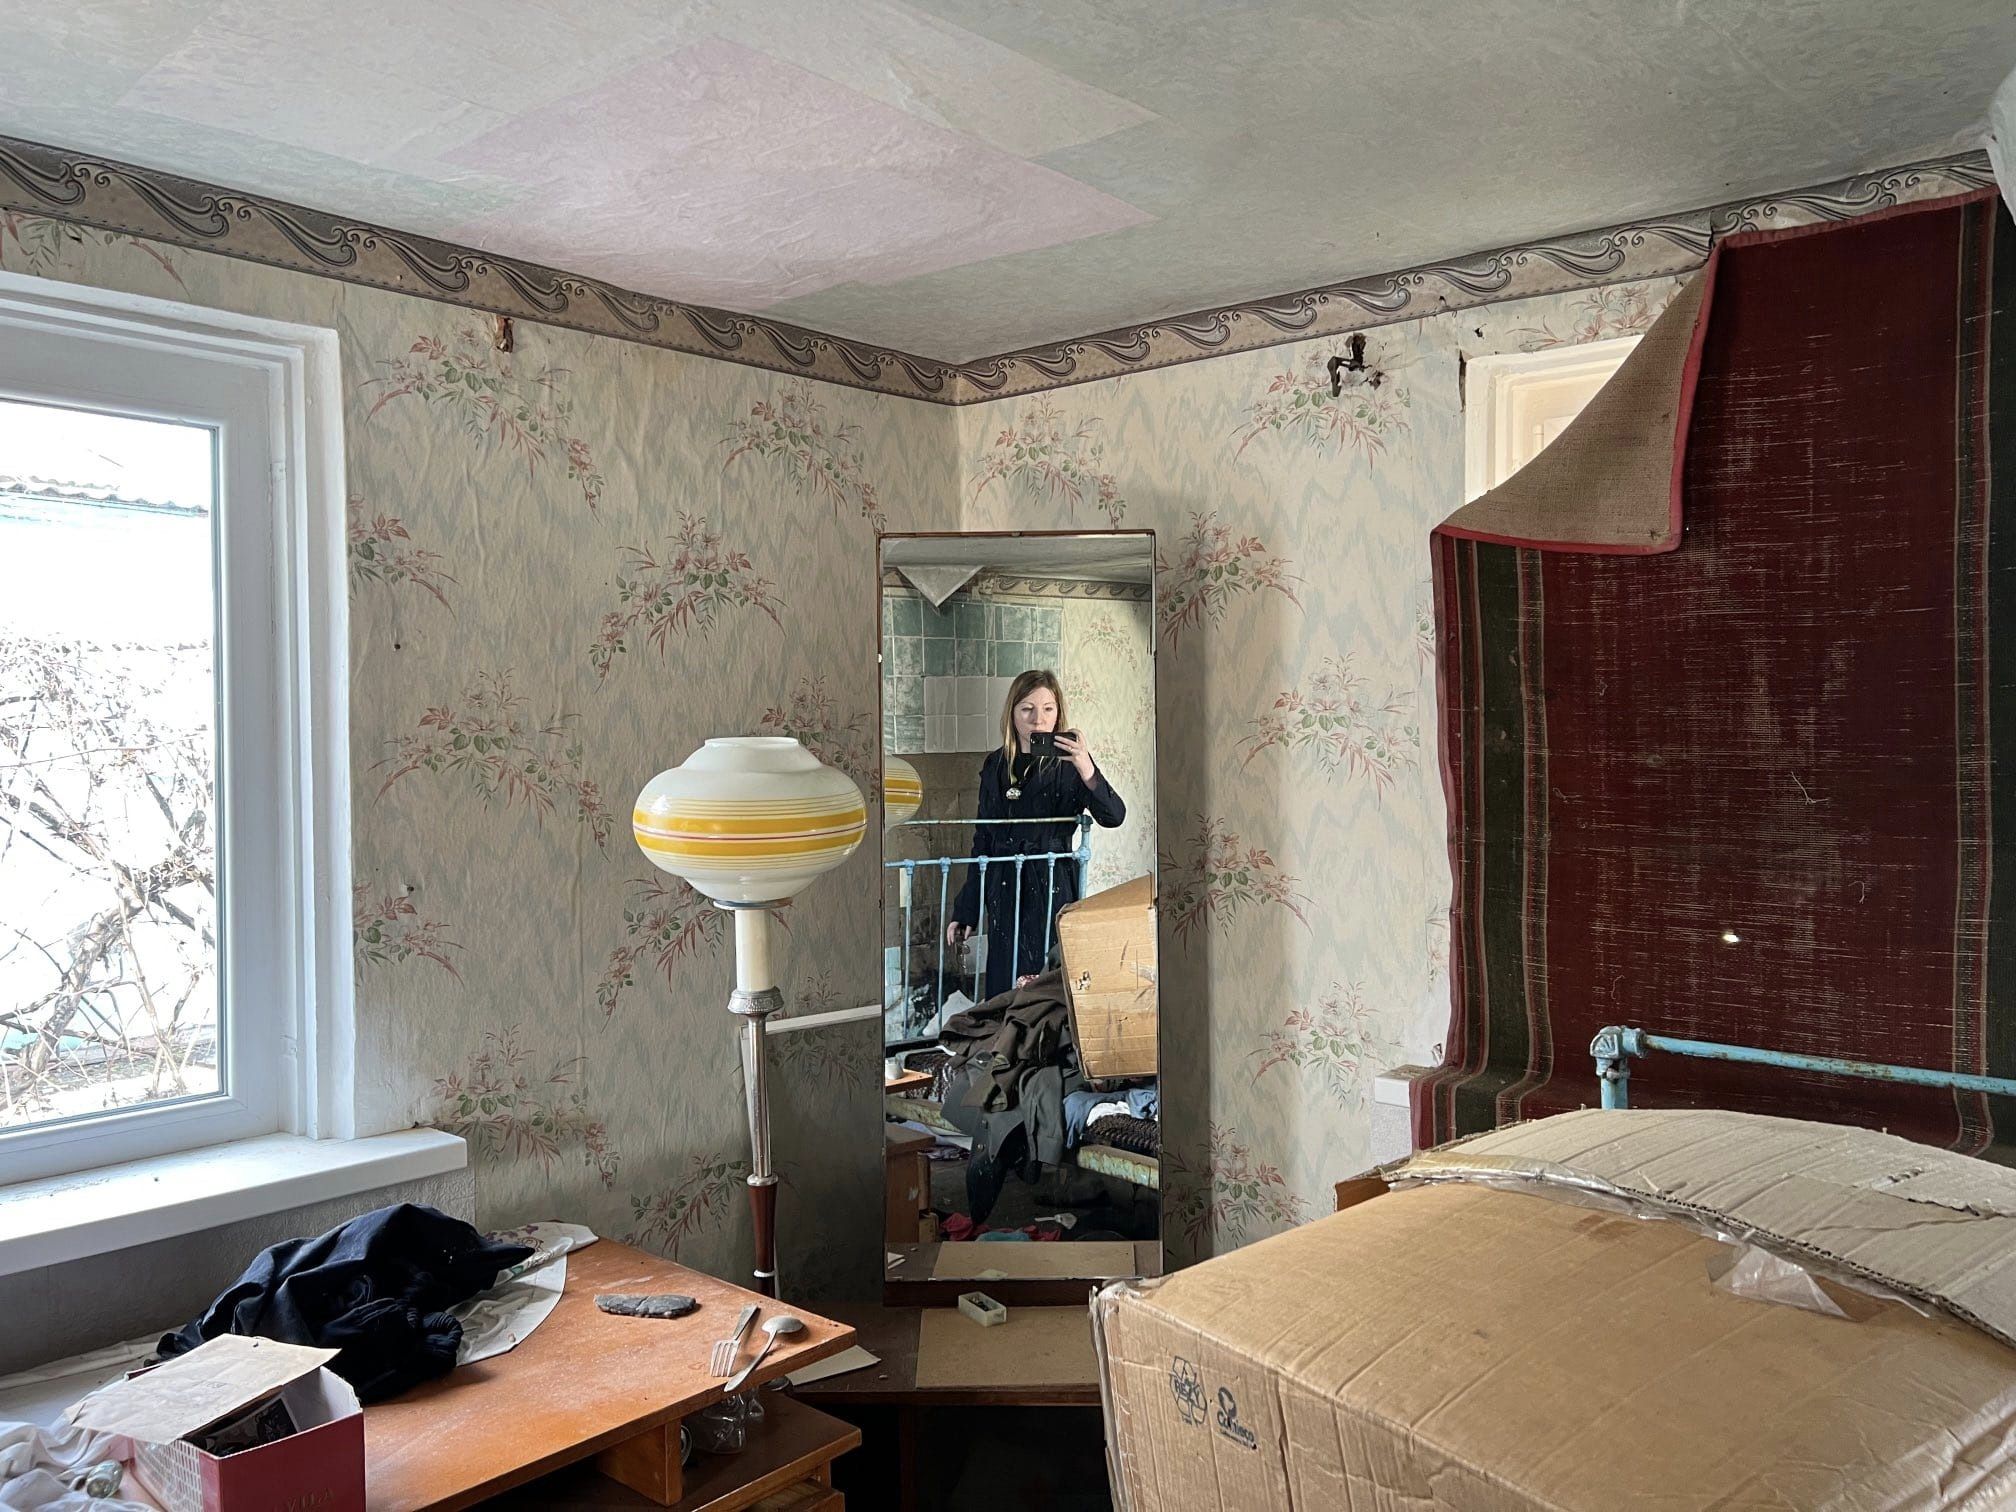 Victoria Amelina, investigando crímenes de guerra en una residencia abandonada cerca de Zaporizhia, Ucrania. (Twitter)